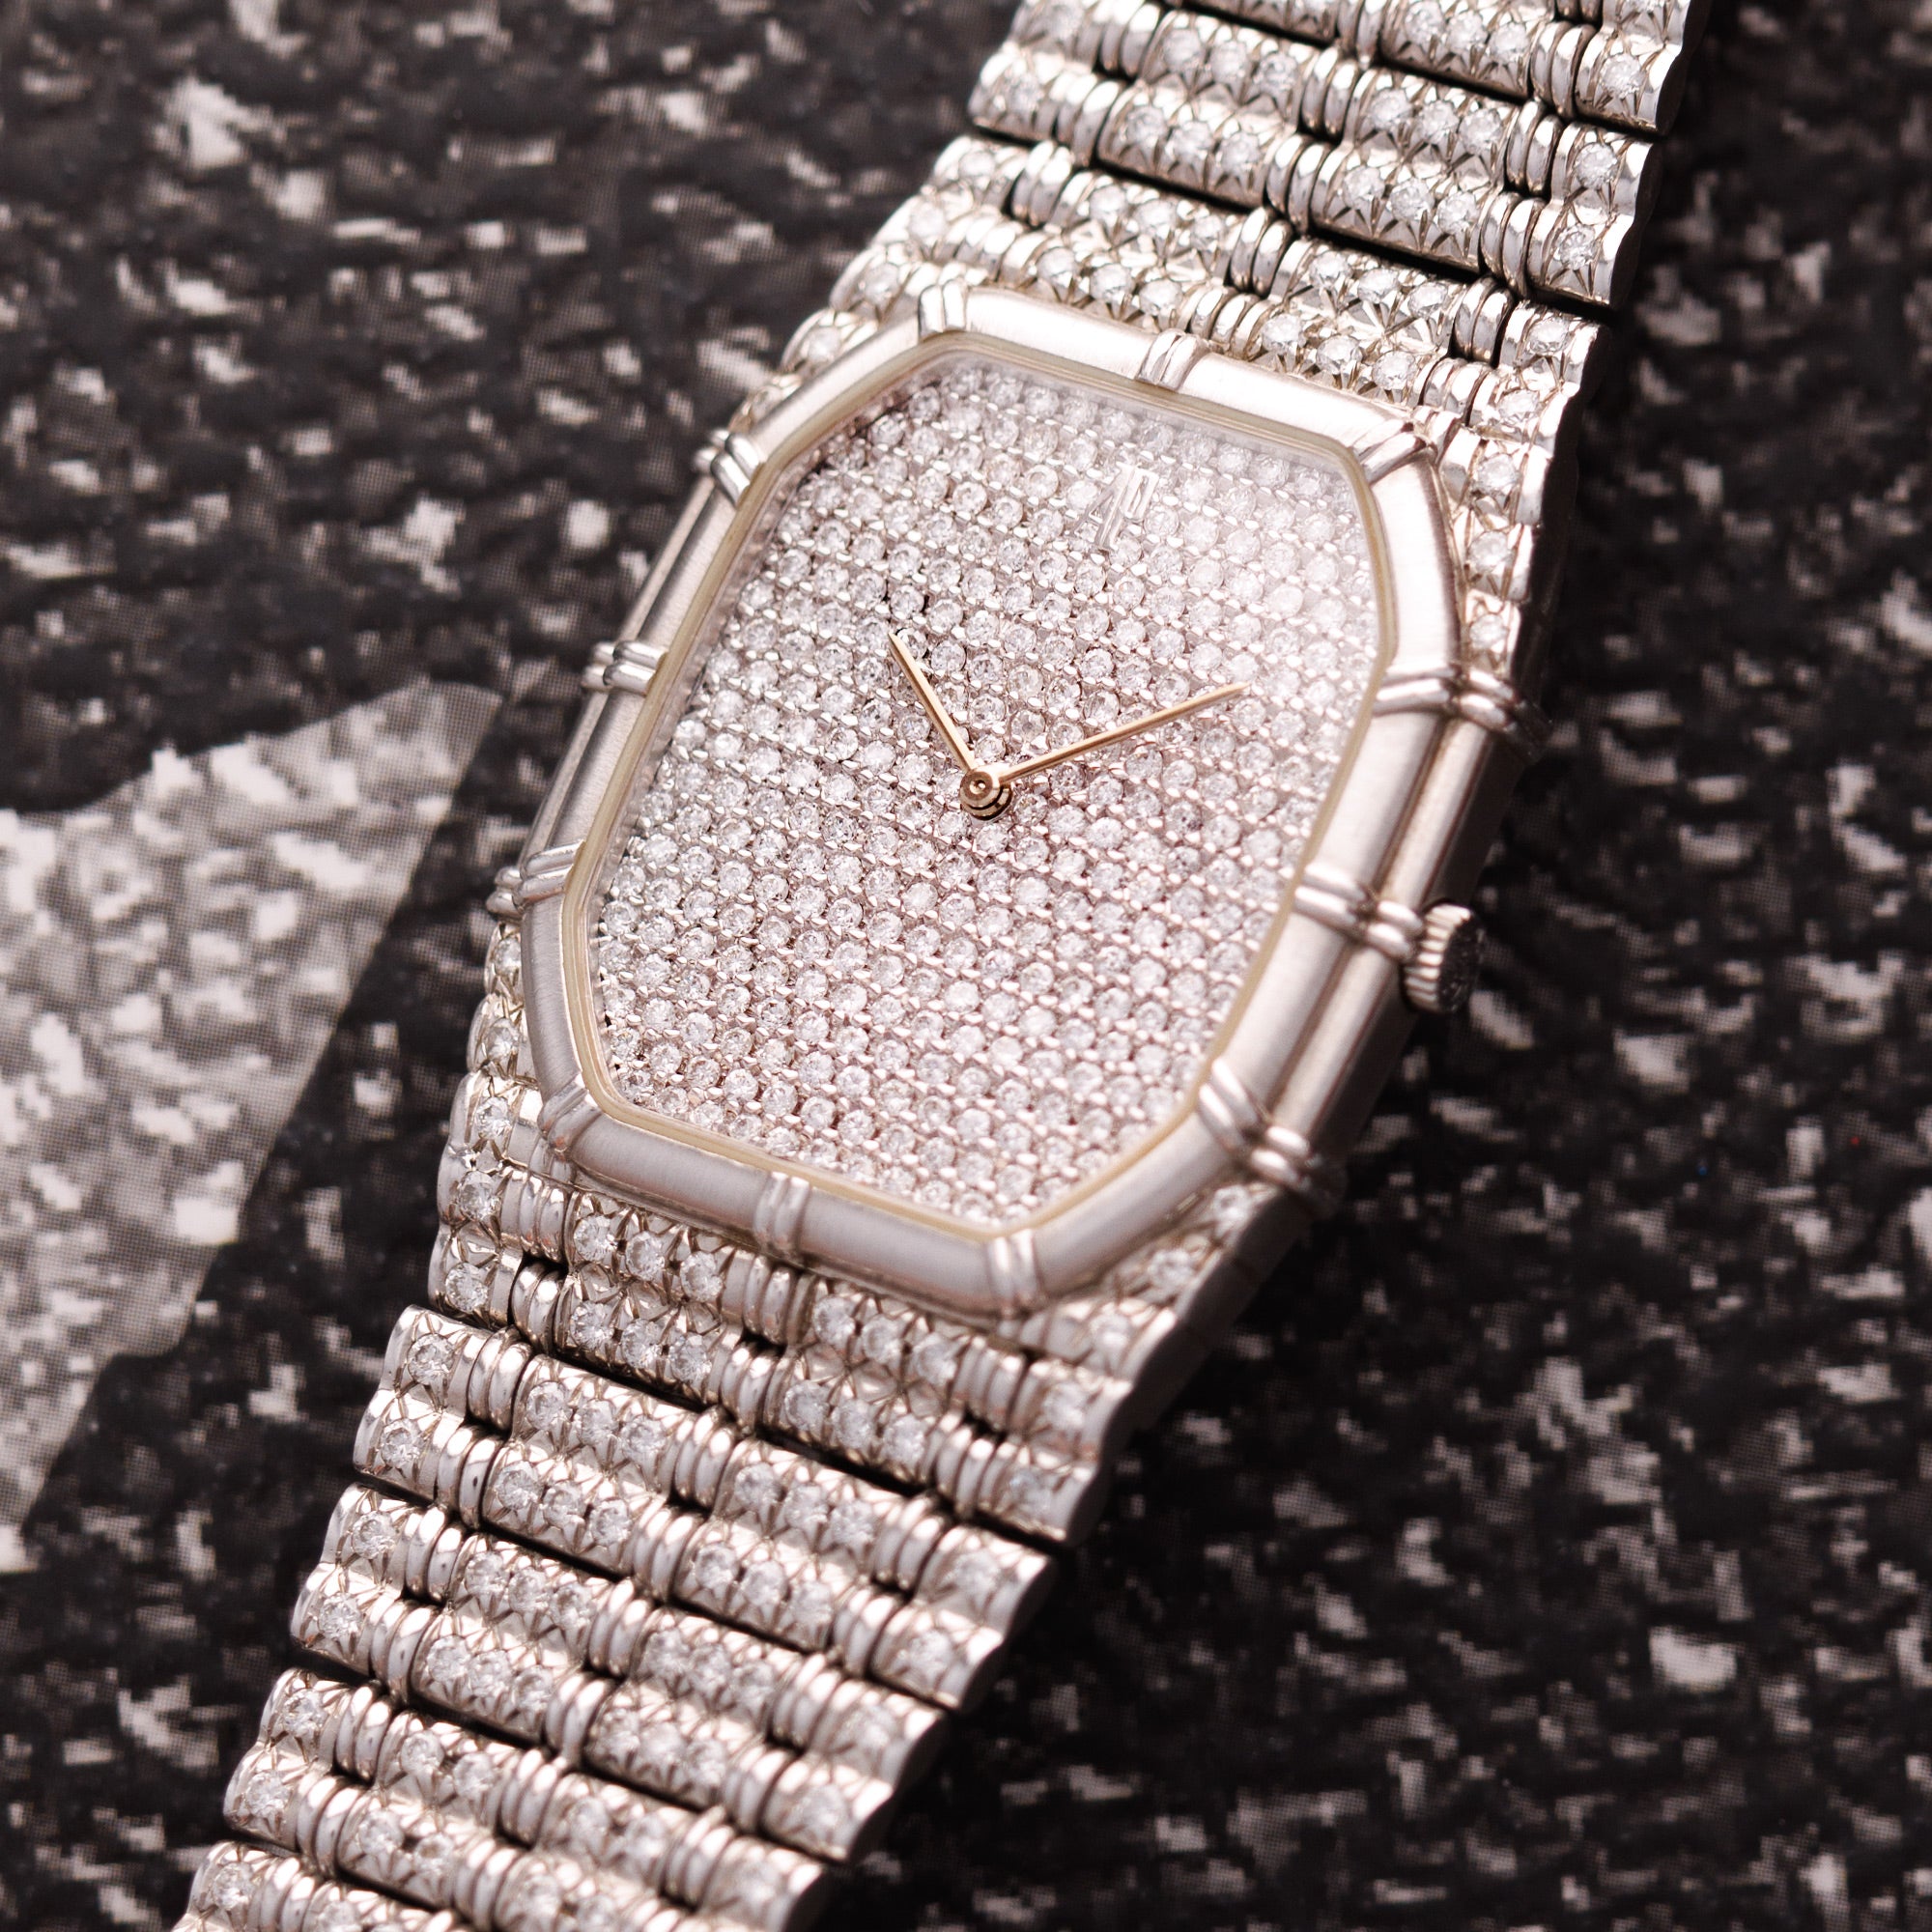 Audemars Piguet - Audemars Piguet White Gold and Diamond Bamboo Watch - The Keystone Watches